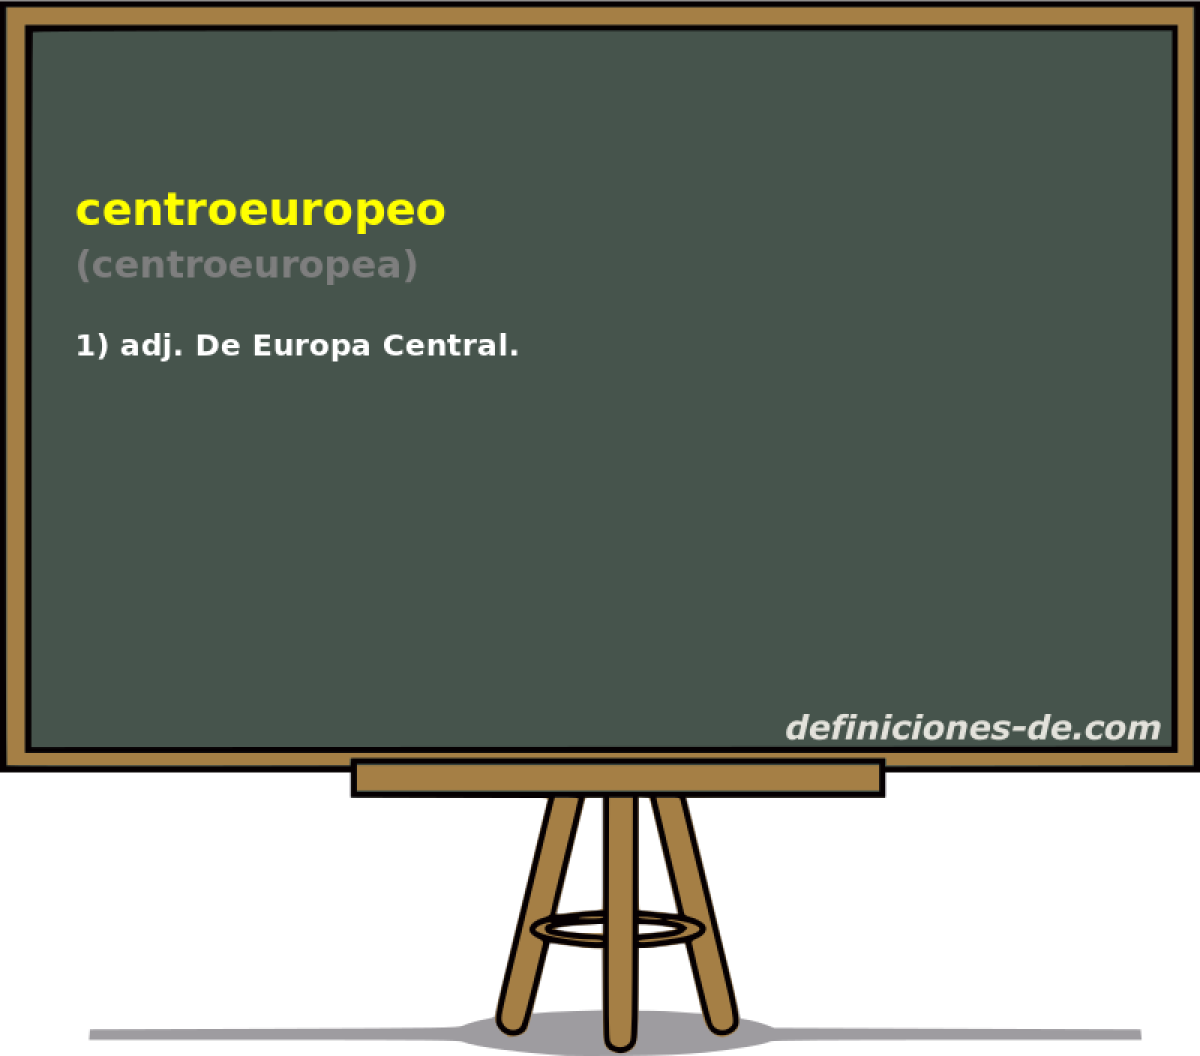 centroeuropeo (centroeuropea)